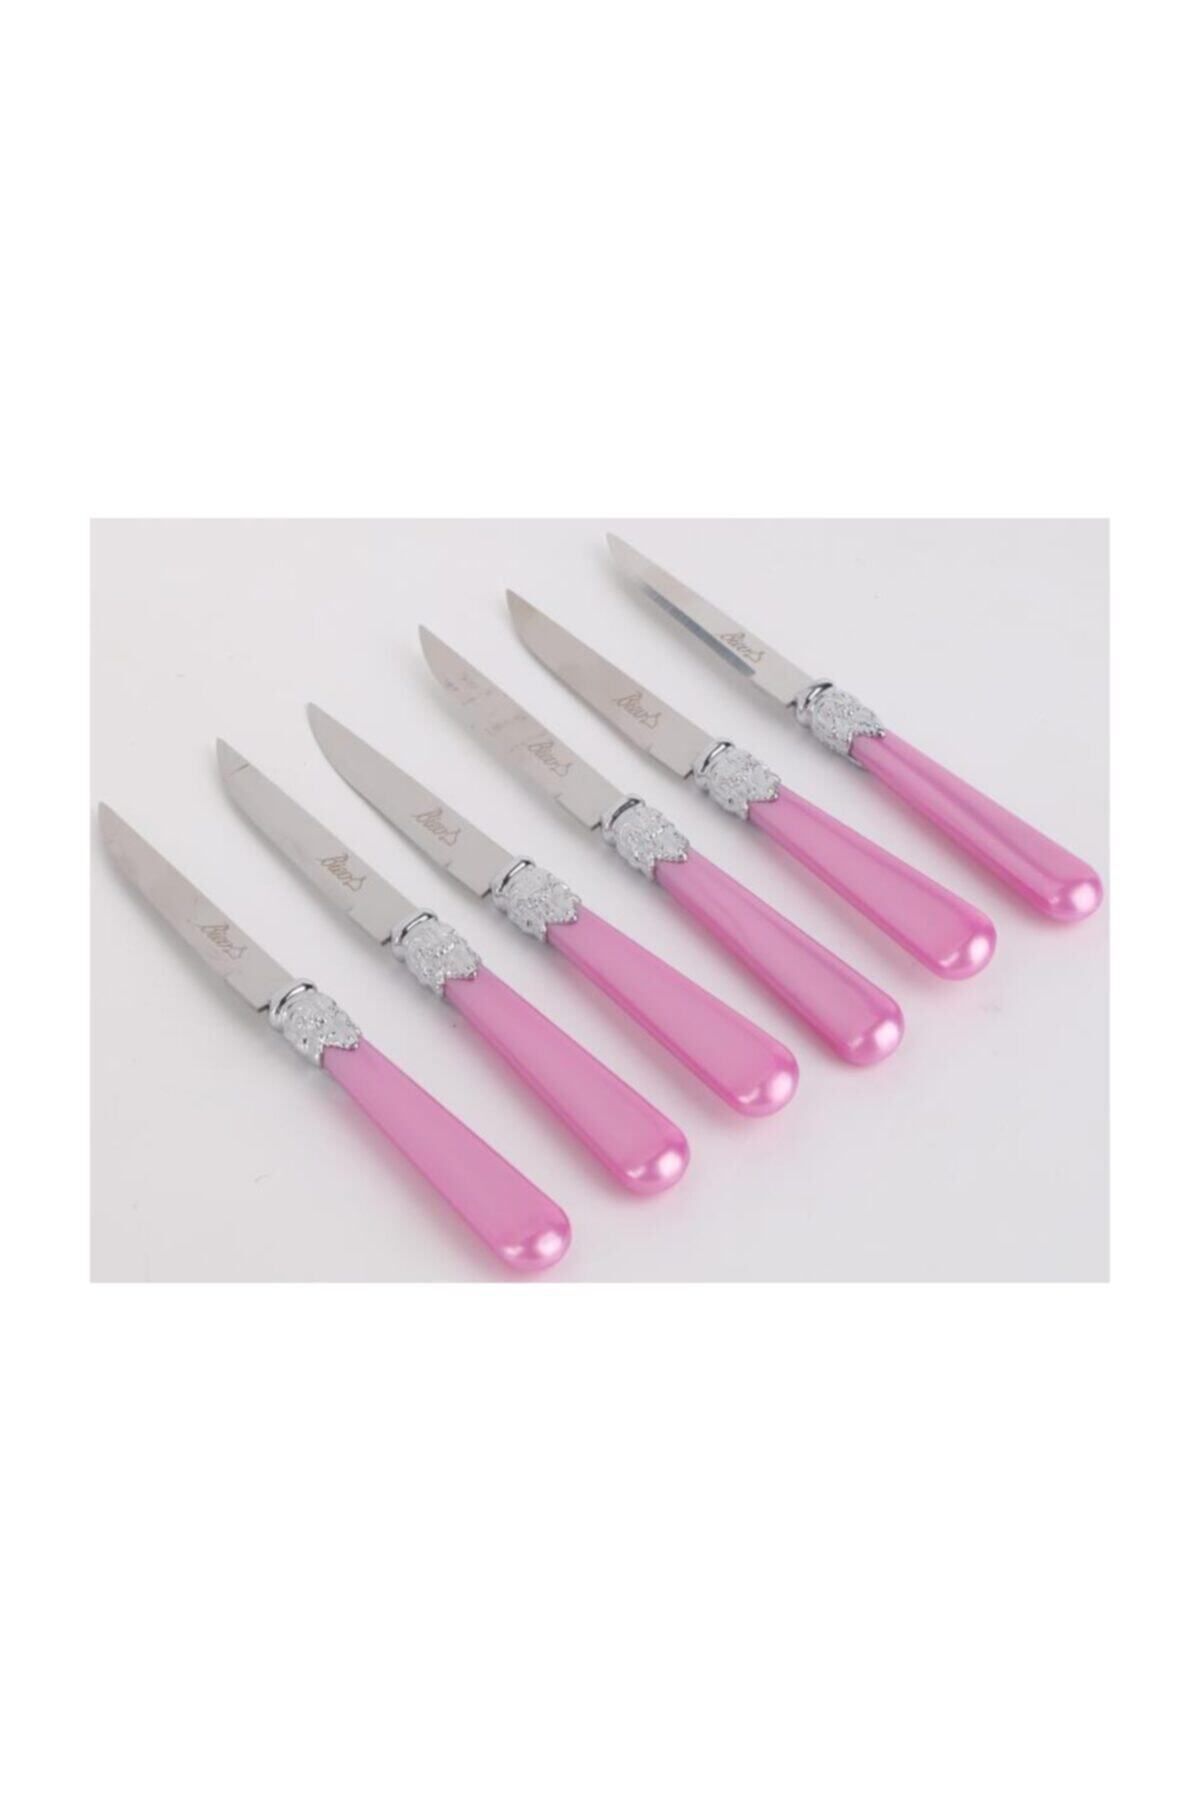 Biev Biev Sedefli Pembe Melamin&çelik 6 lı tatlı Bıçağı SGR1501 - 6